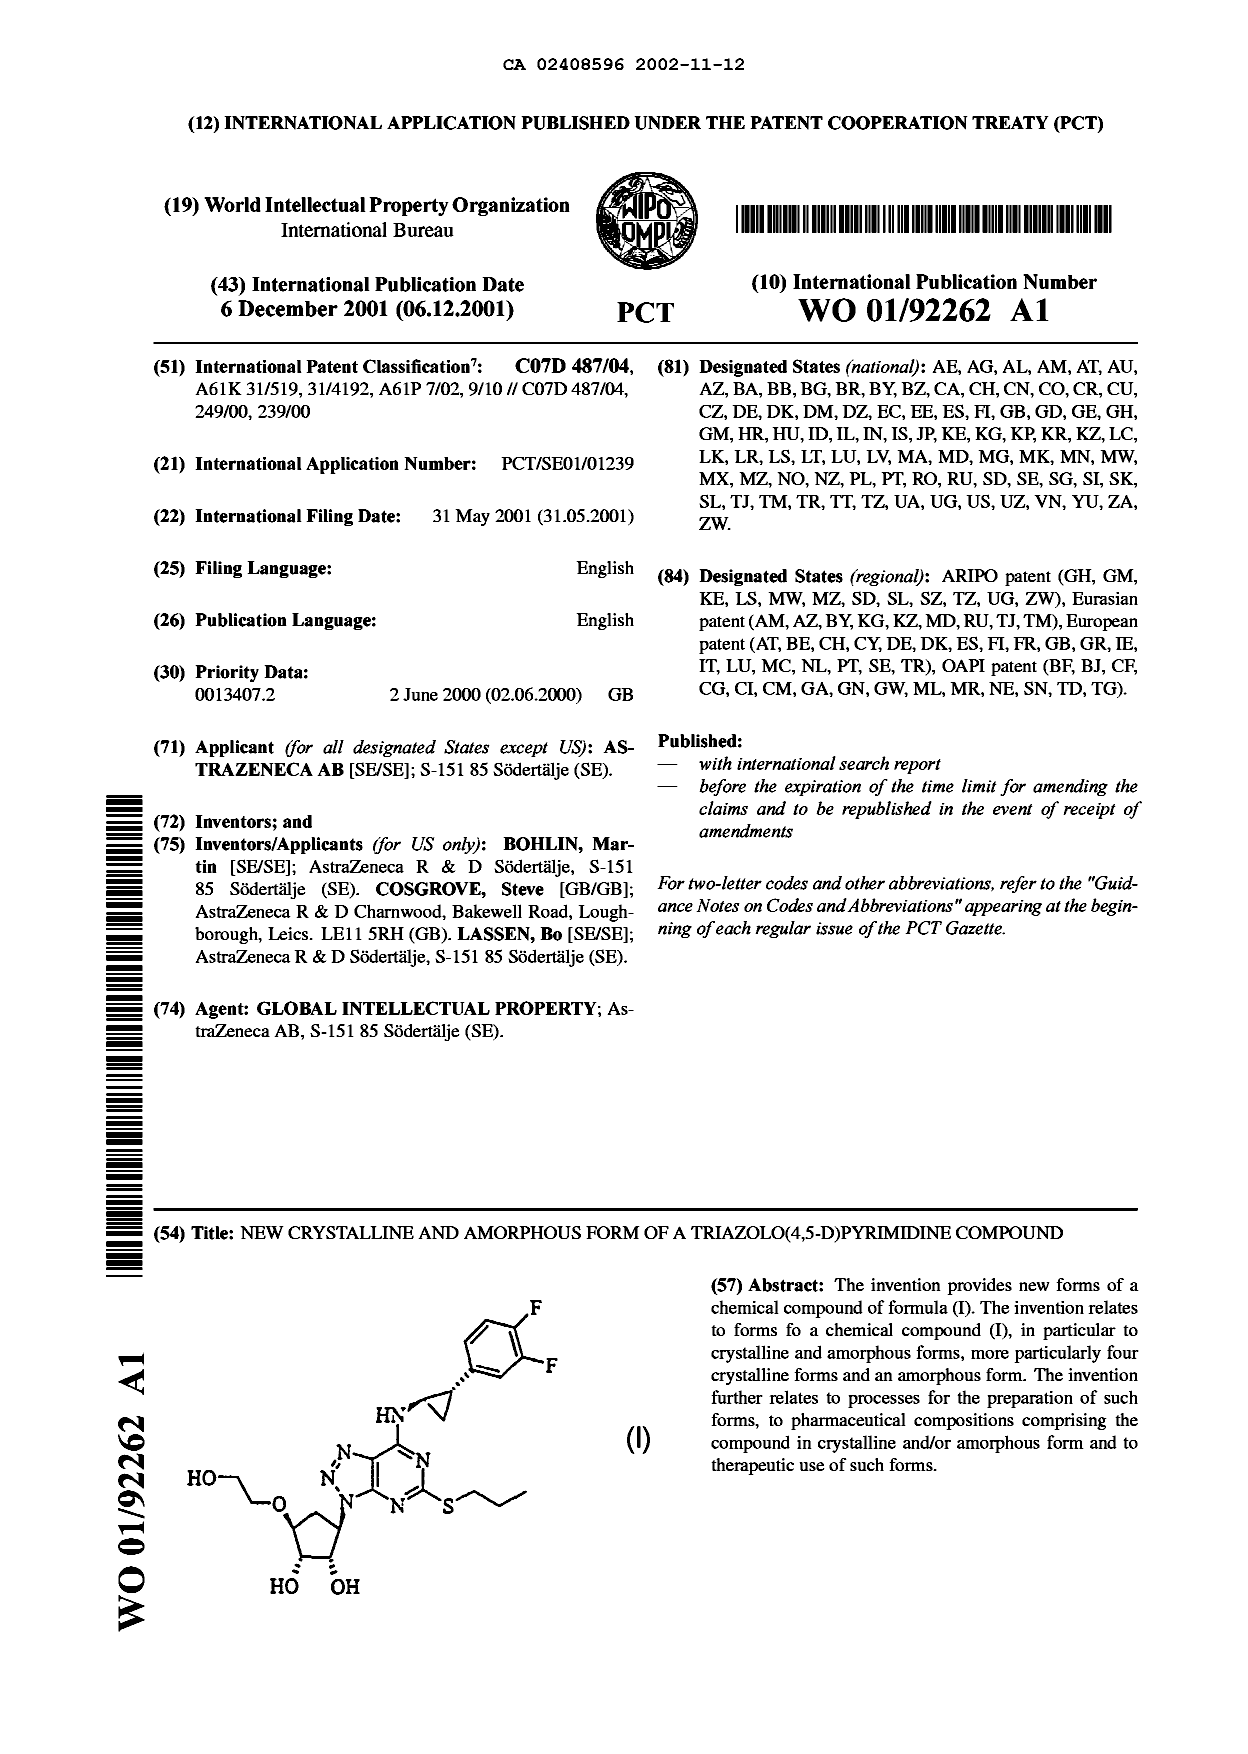 Document de brevet canadien 2408596. Abrégé 20011212. Image 1 de 1